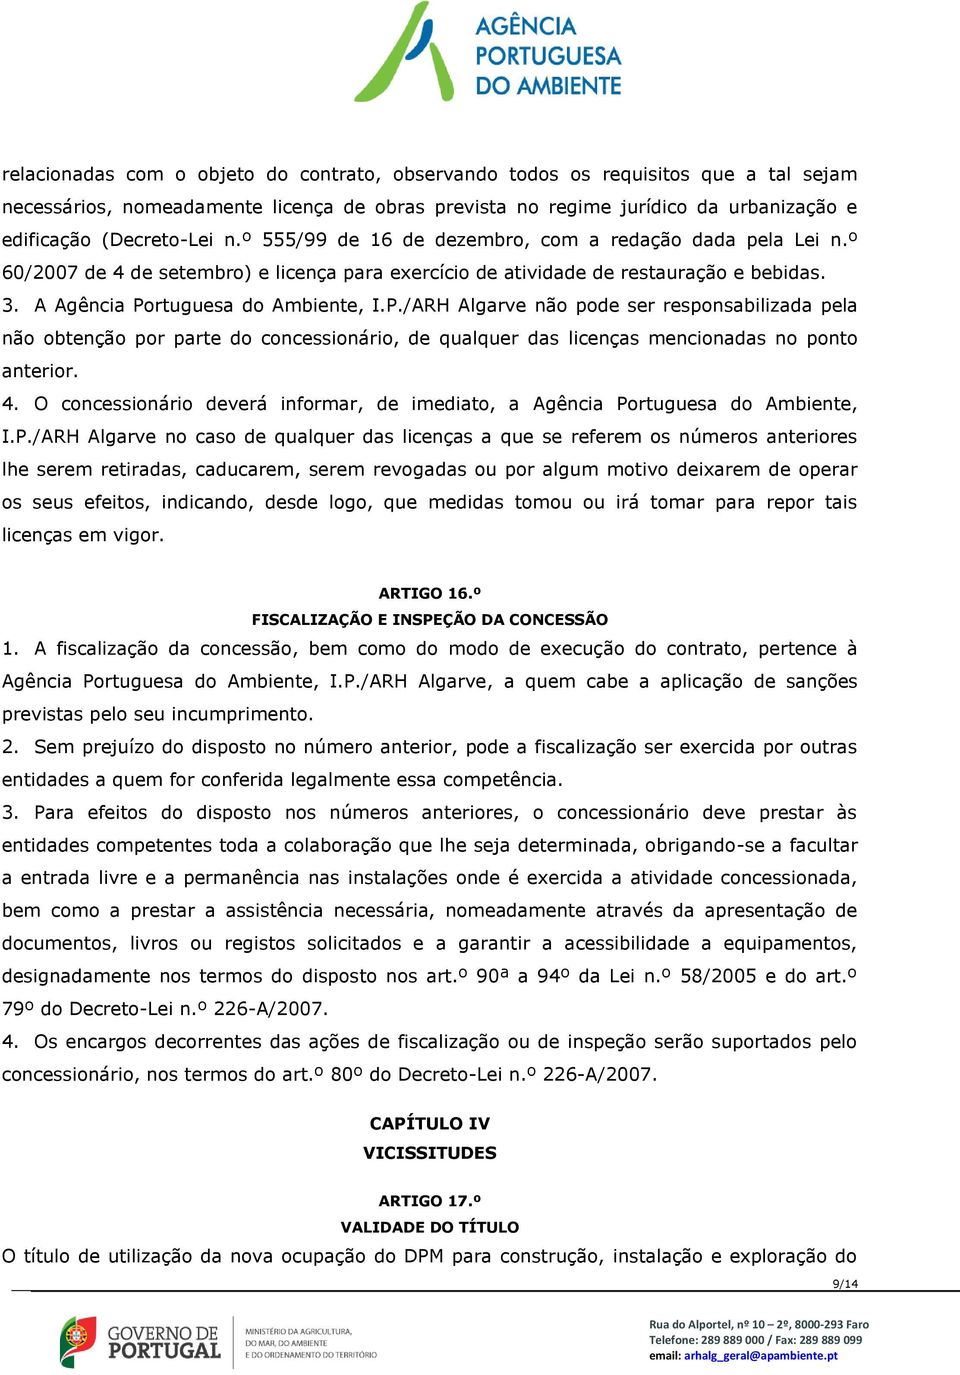 rtuguesa do Ambiente, I.P./ARH Algarve não pode ser responsabilizada pela não obtenção por parte do concessionário, de qualquer das licenças mencionadas no ponto anterior. 4.